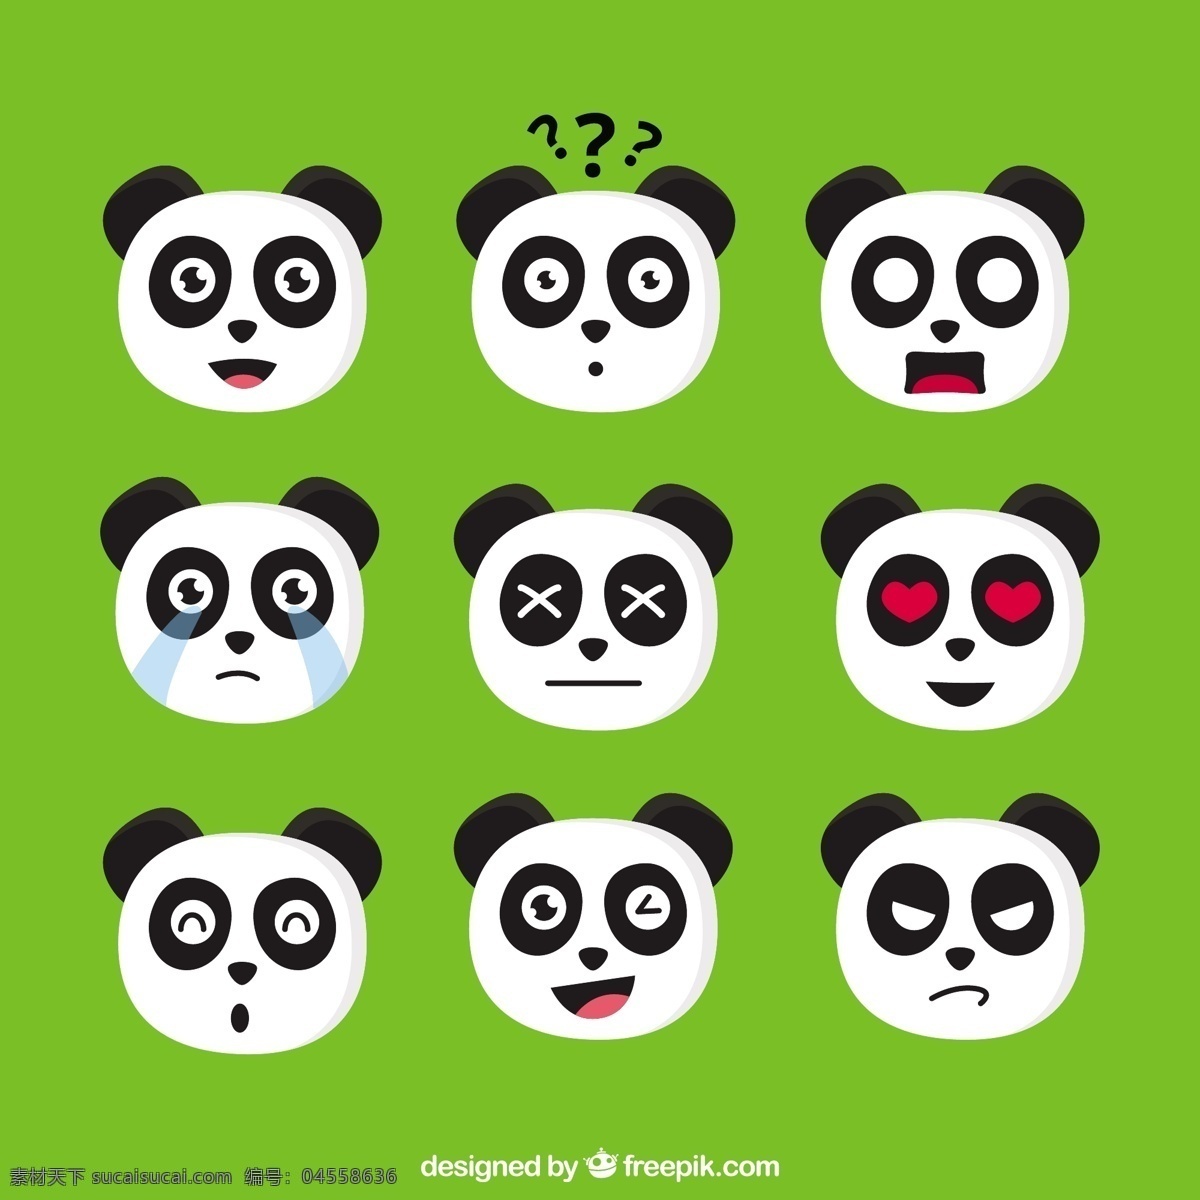 表情 包 熊猫 爱的设计 动物的脸 可爱的微笑 快乐 平淡 表情符号 笑脸 平面设计 装饰 好玩 有趣 可爱的动物 人物 情感表达